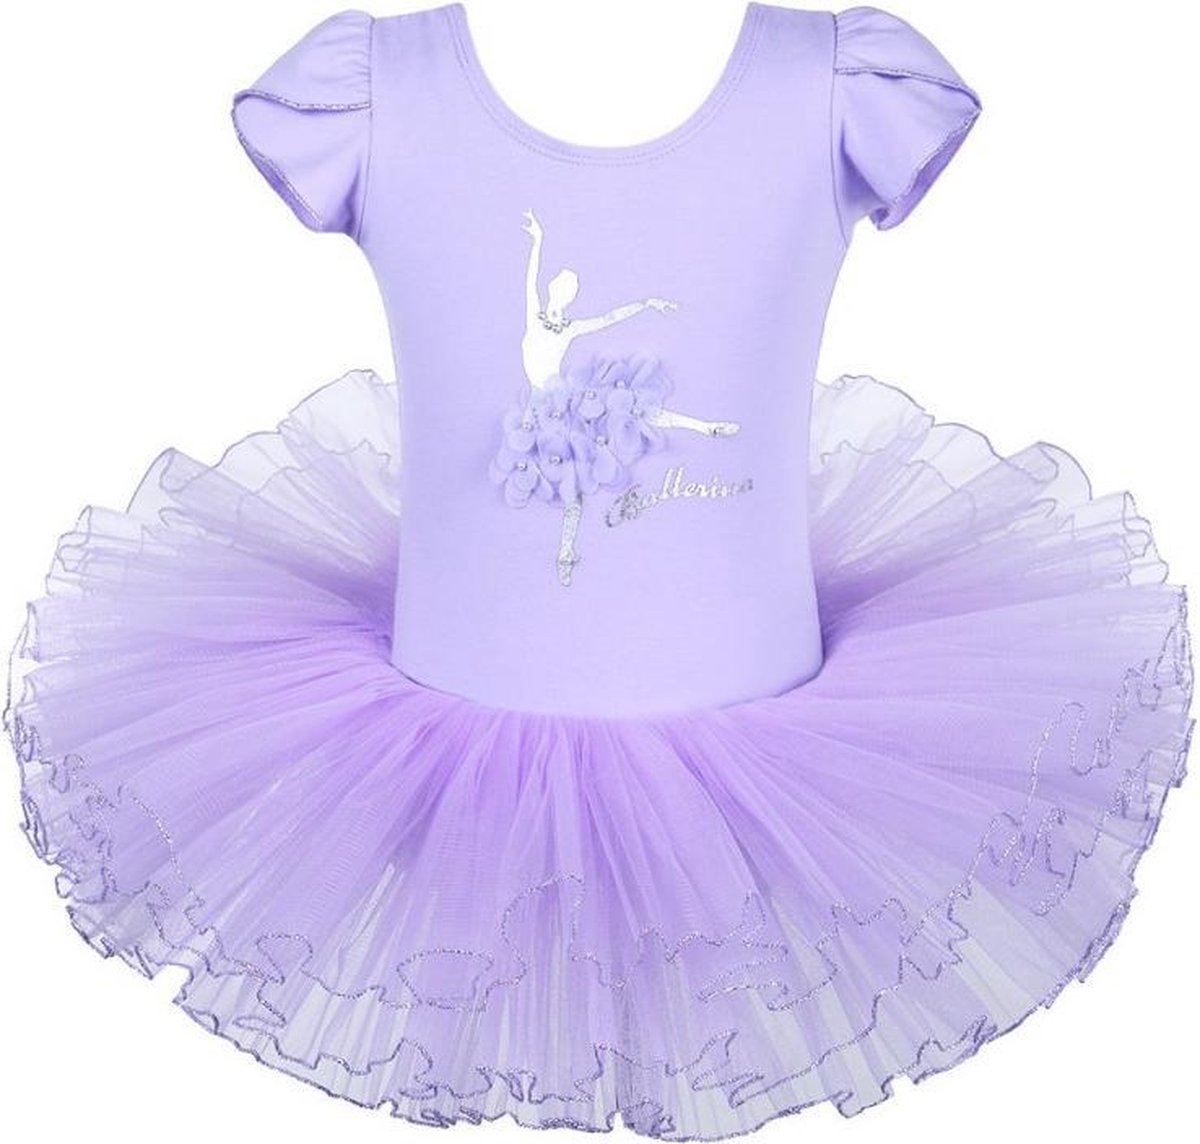 Balletpakje Ballerina + Tutu - lila - Ballet - maat 110-116 prinsessen tutu verkleed jurk meisje